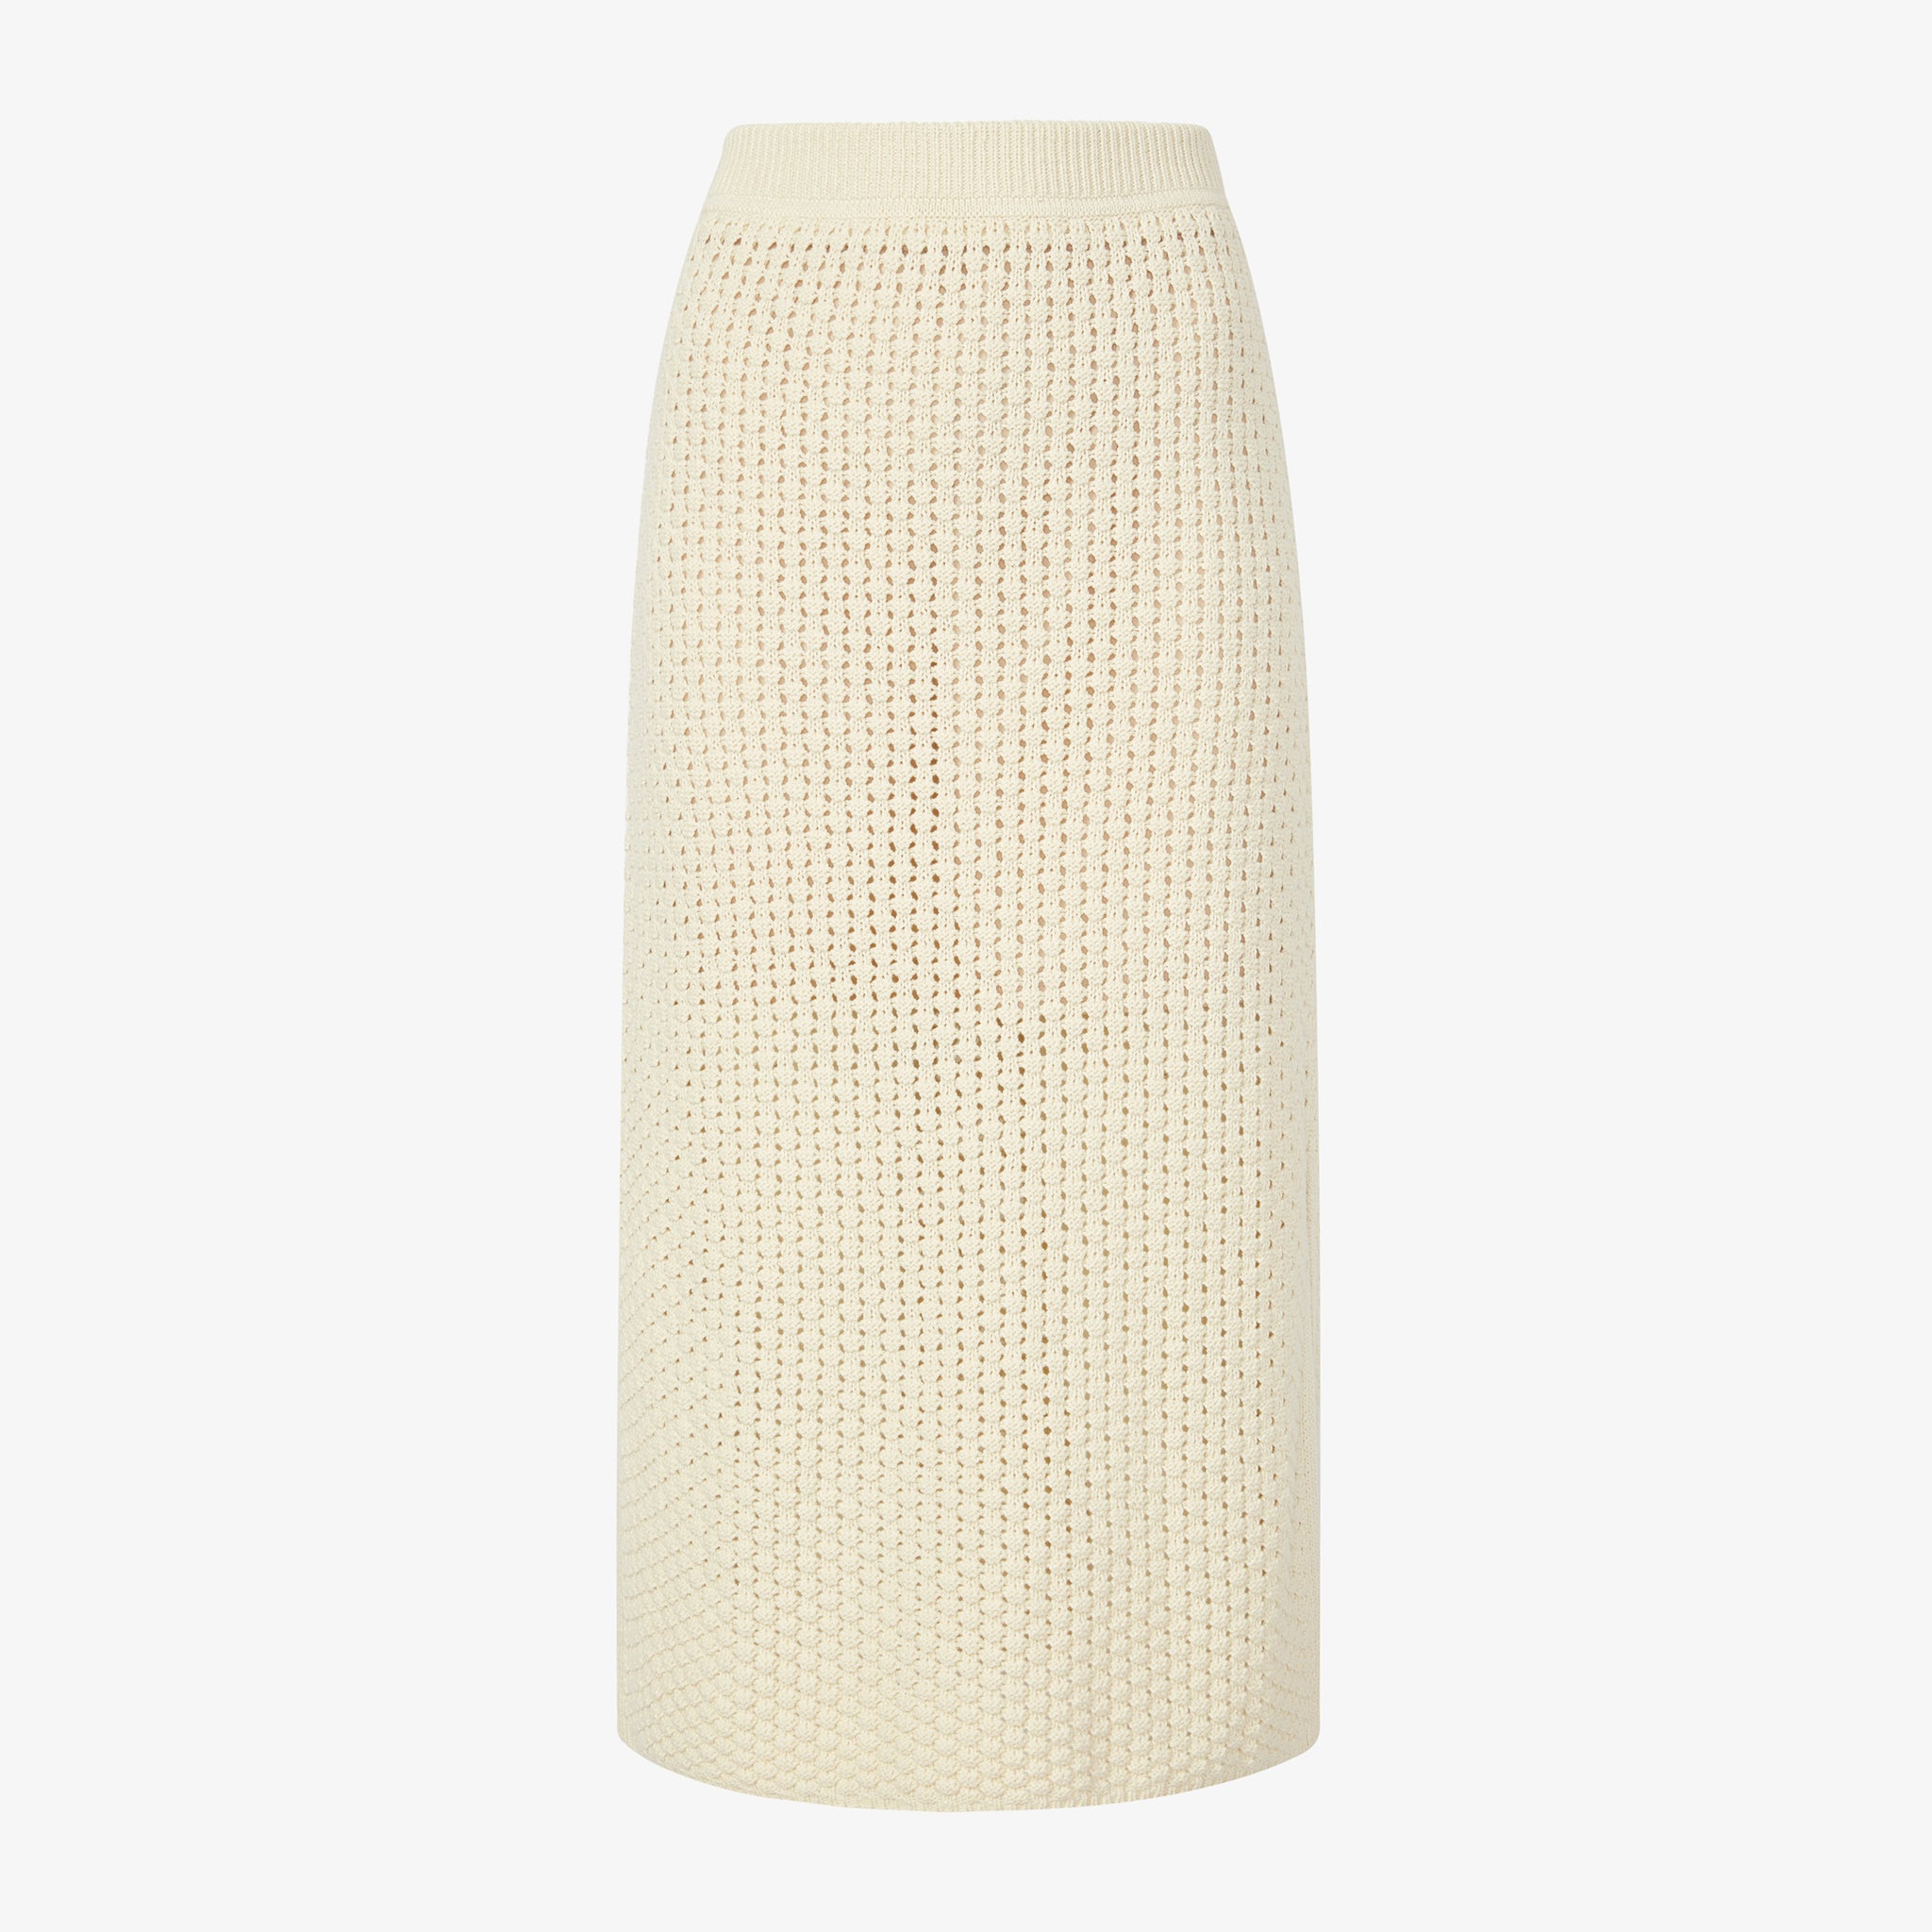 Packshot image of the Senga skirt in coconut